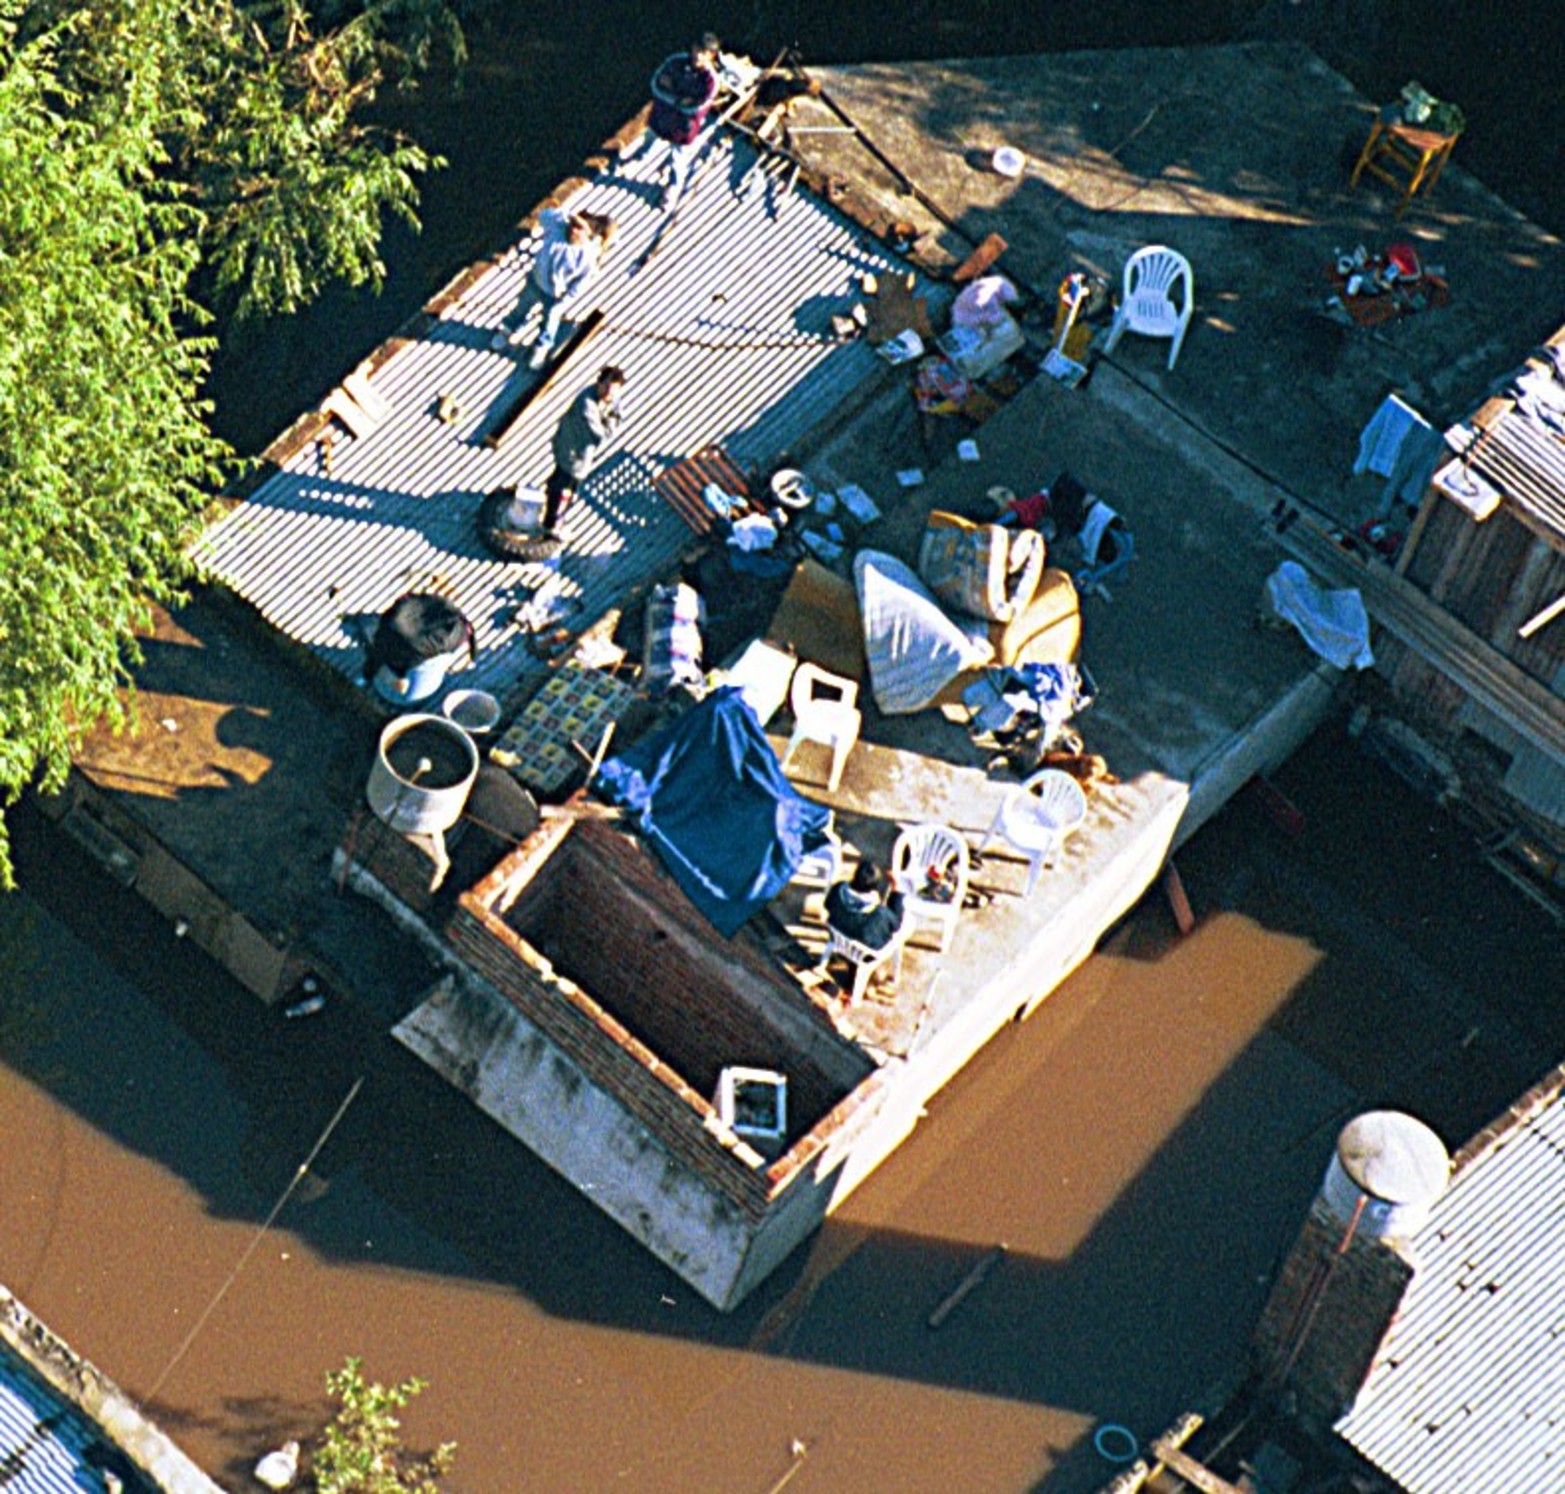 Viernes 2 de mayo de 2003. Como muchos vecinos del cordón oeste de la ciudad se instalaron en sus techos para cuidar su propiedad.